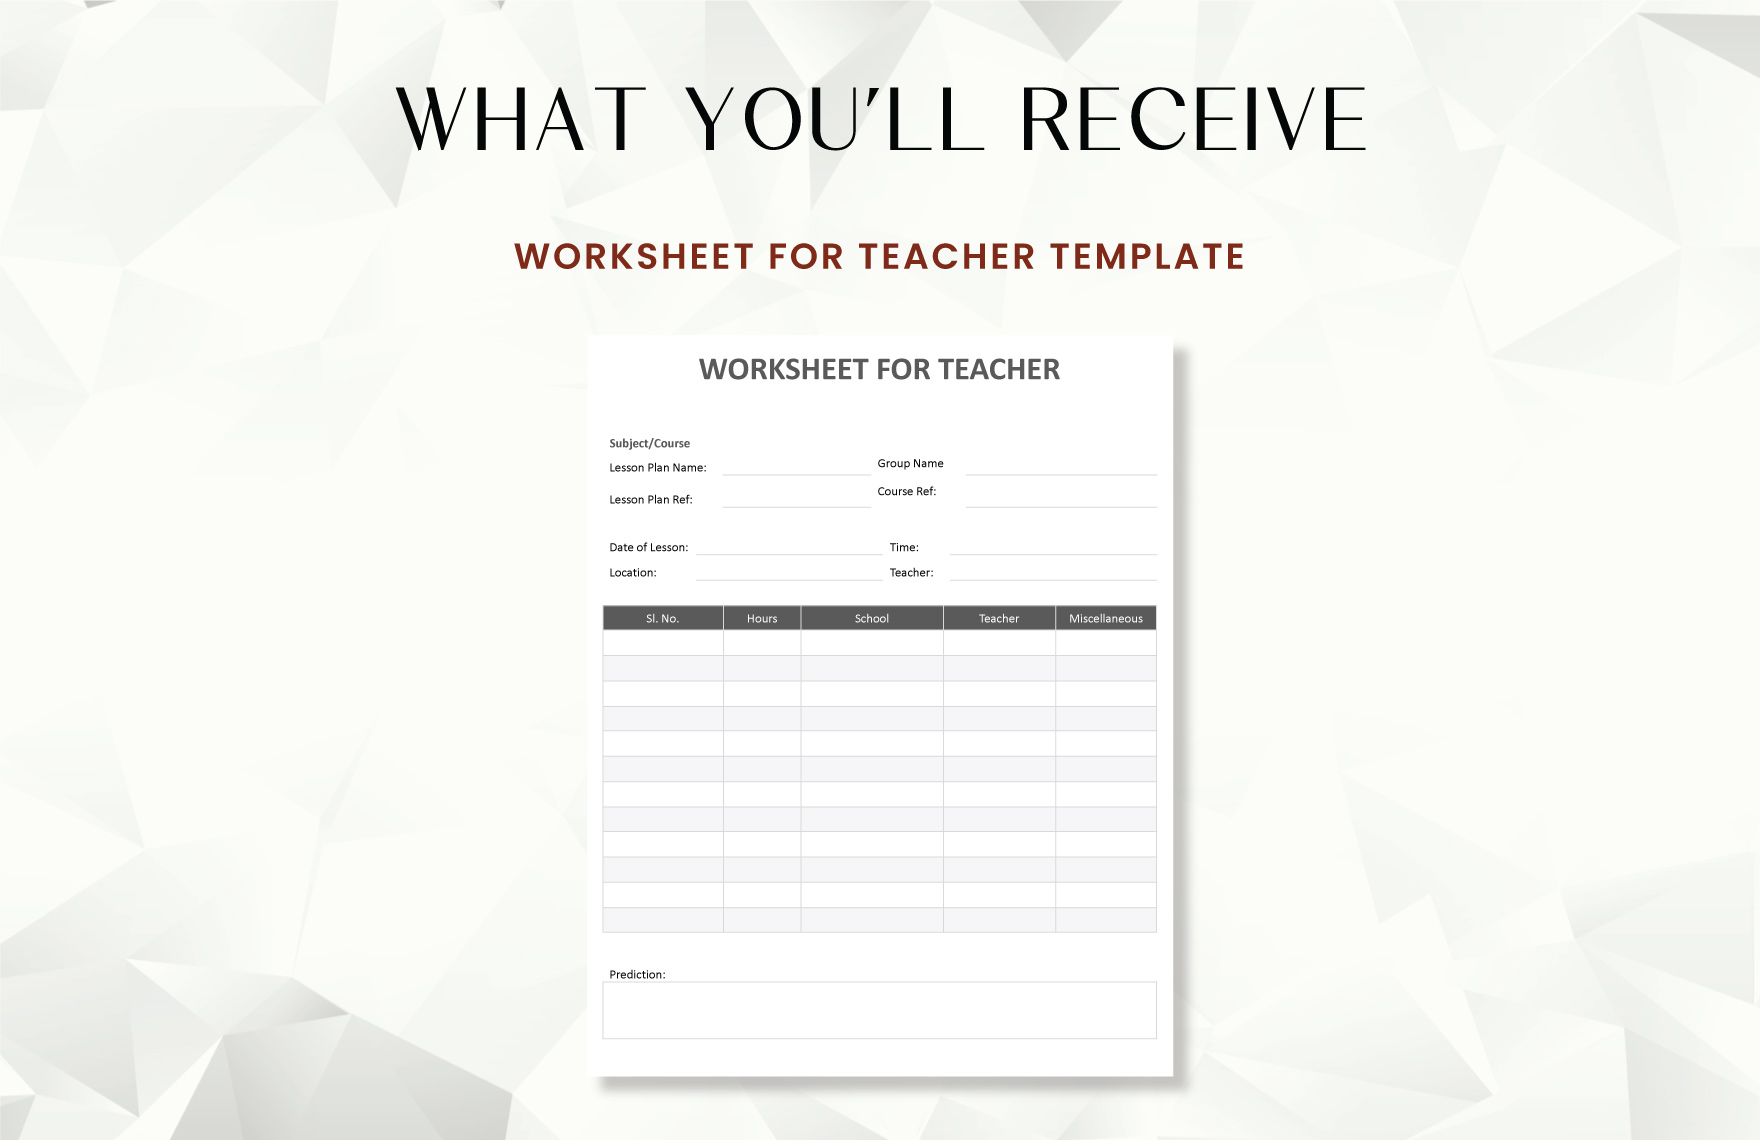 Worksheet for Teacher Template